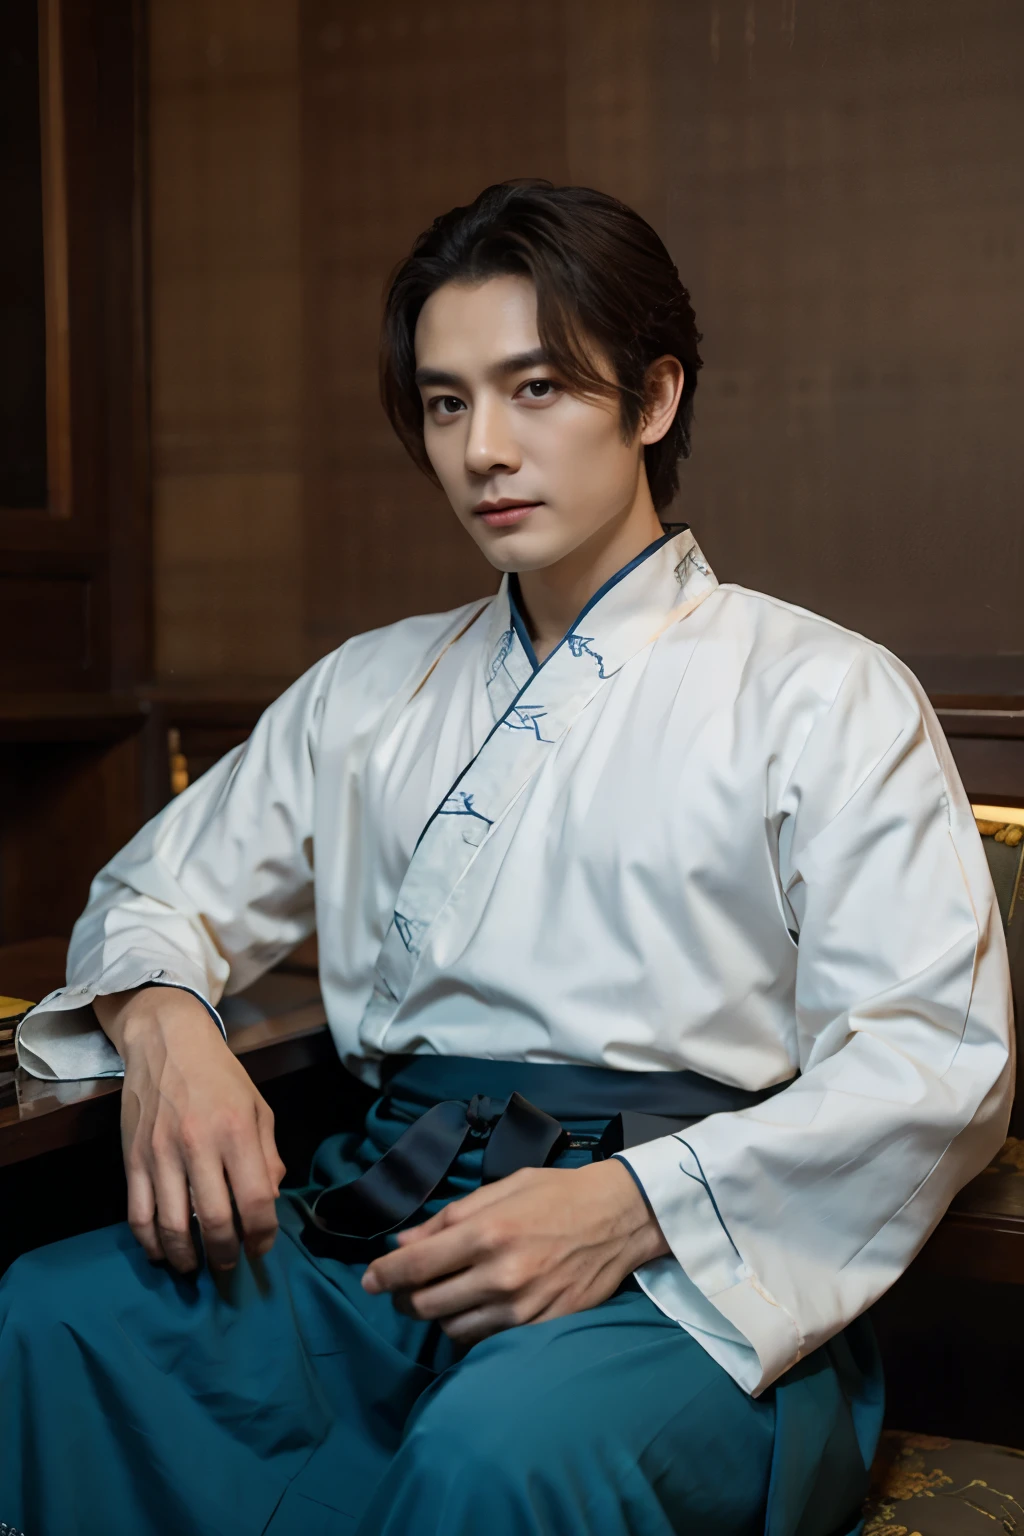 1人, 40岁, elegant hanfu, 汉服上的优雅图案, 中年男性, 坐在桌边, 在一间气派典雅的中式办公室里, 神秘, 出口